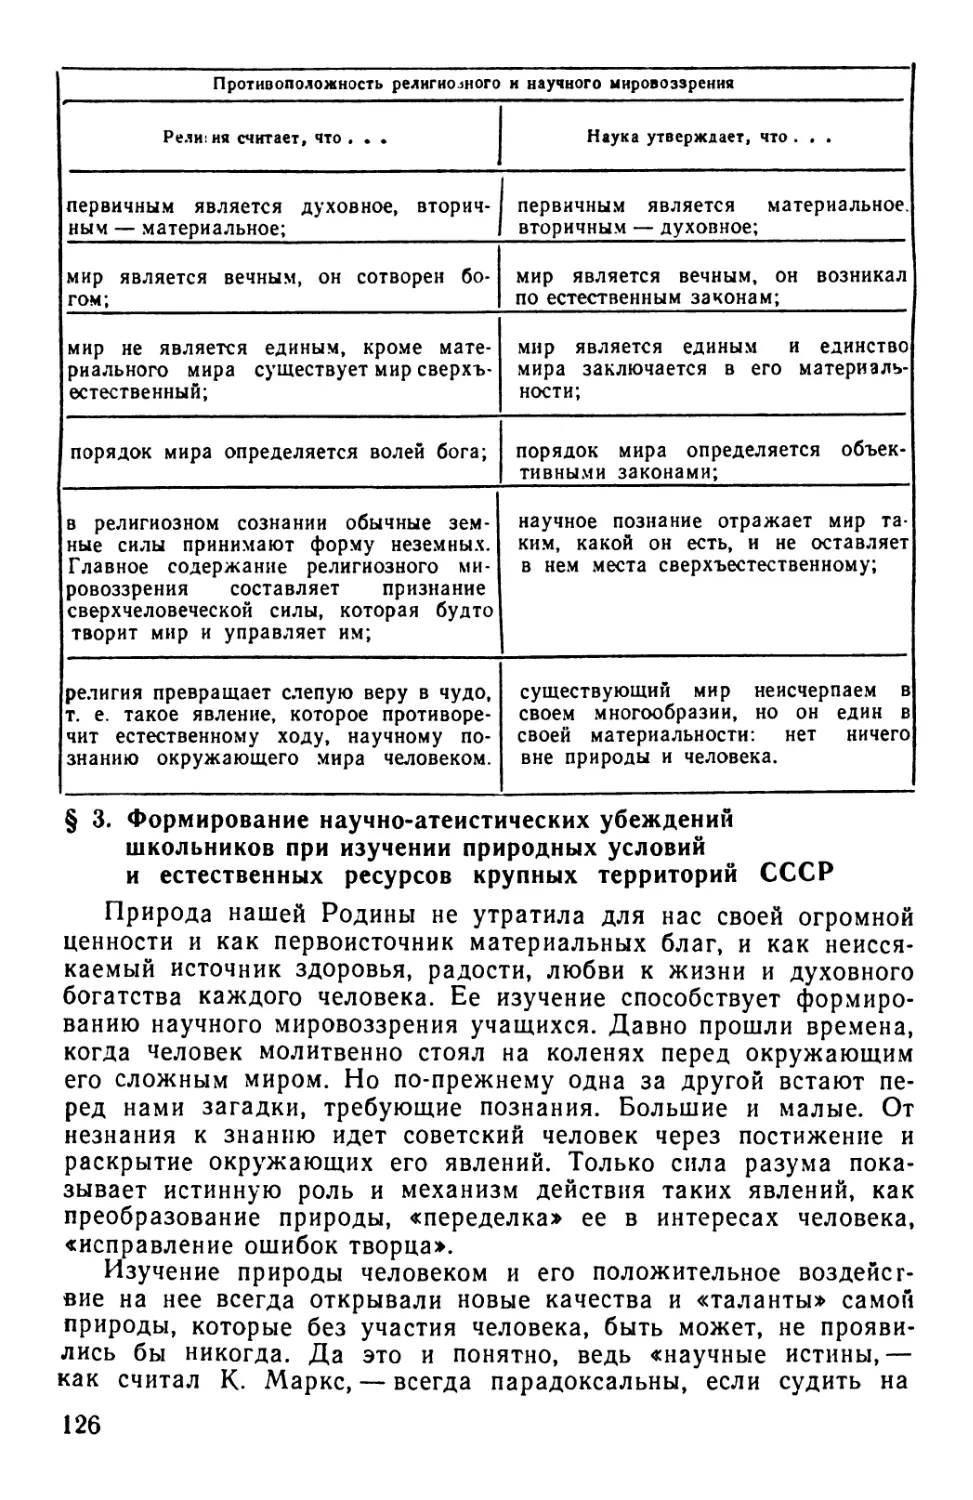 § 3. Формирование научно-атеистических убеждений школьников при изучении природных условий и естественных ресурсов крупных территорий СССР